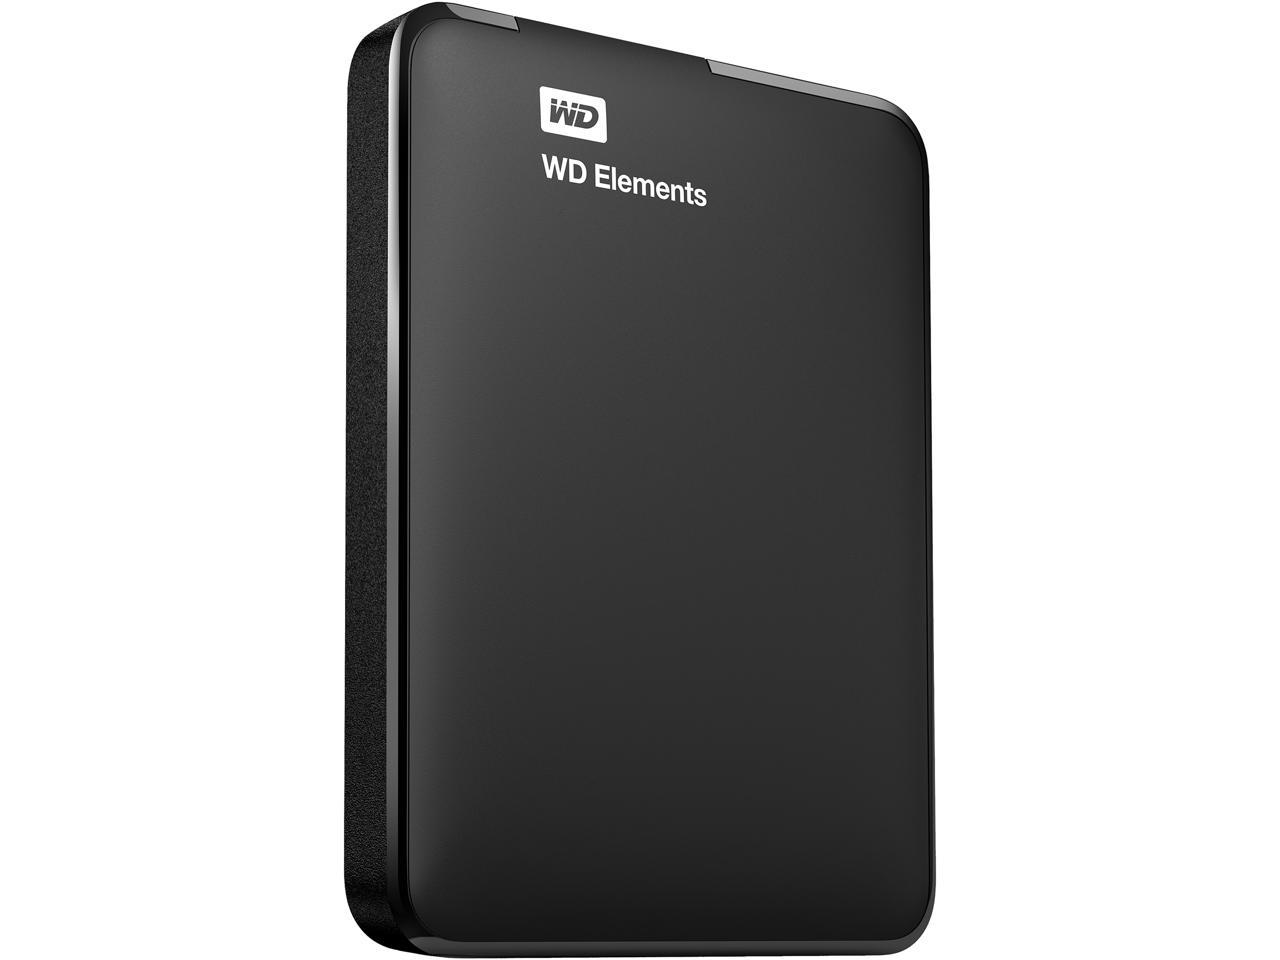 WD Elements 1TB USB 3.0 External Portable Hard Drive HDD WDBUZG0010BBK WIN 8 MAC 